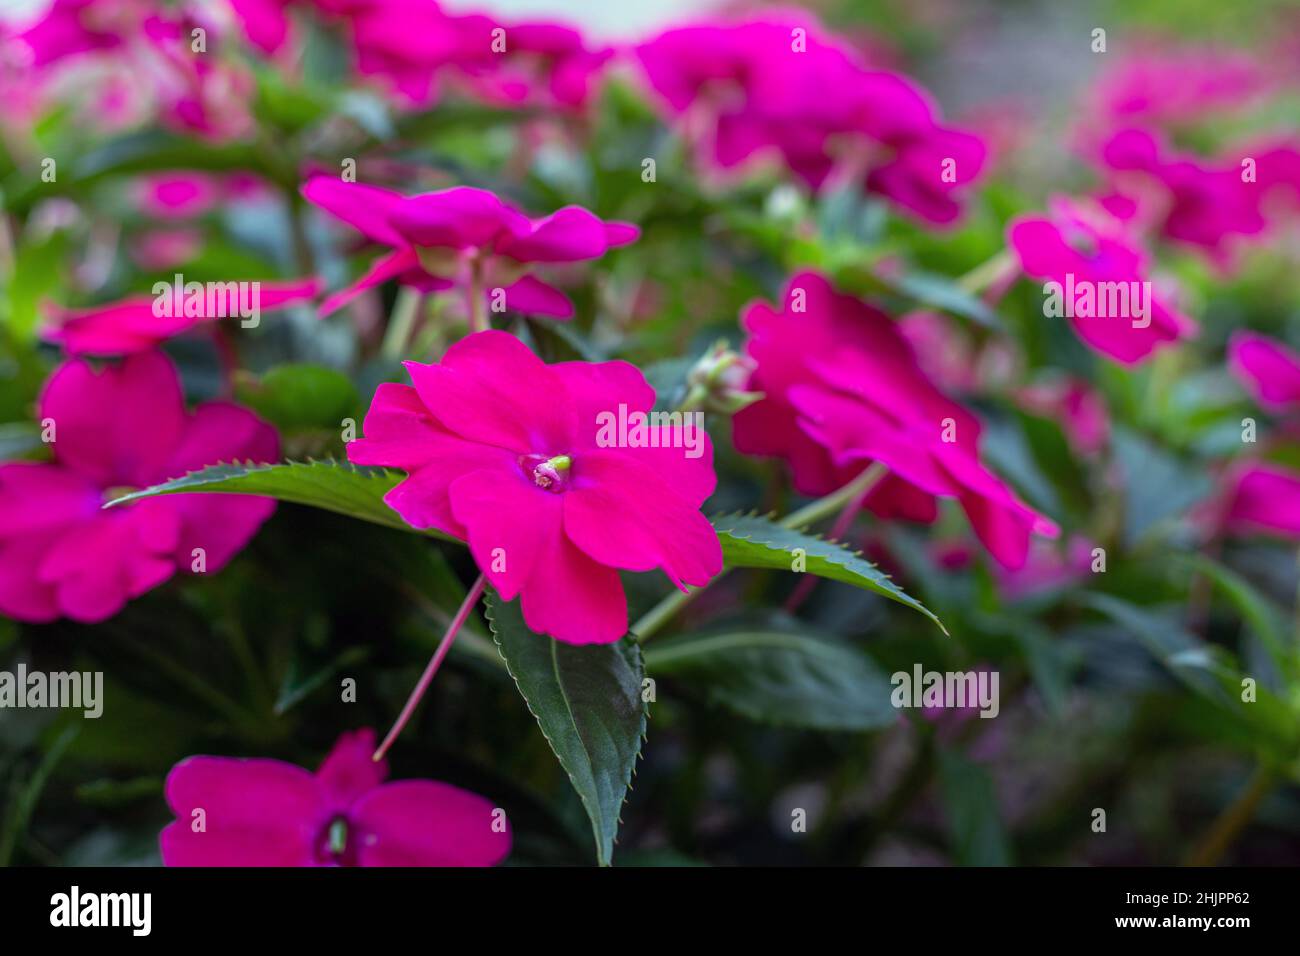 Rosa brillante Impatiens fiori in fiore all'aperto, primo piano Foto Stock